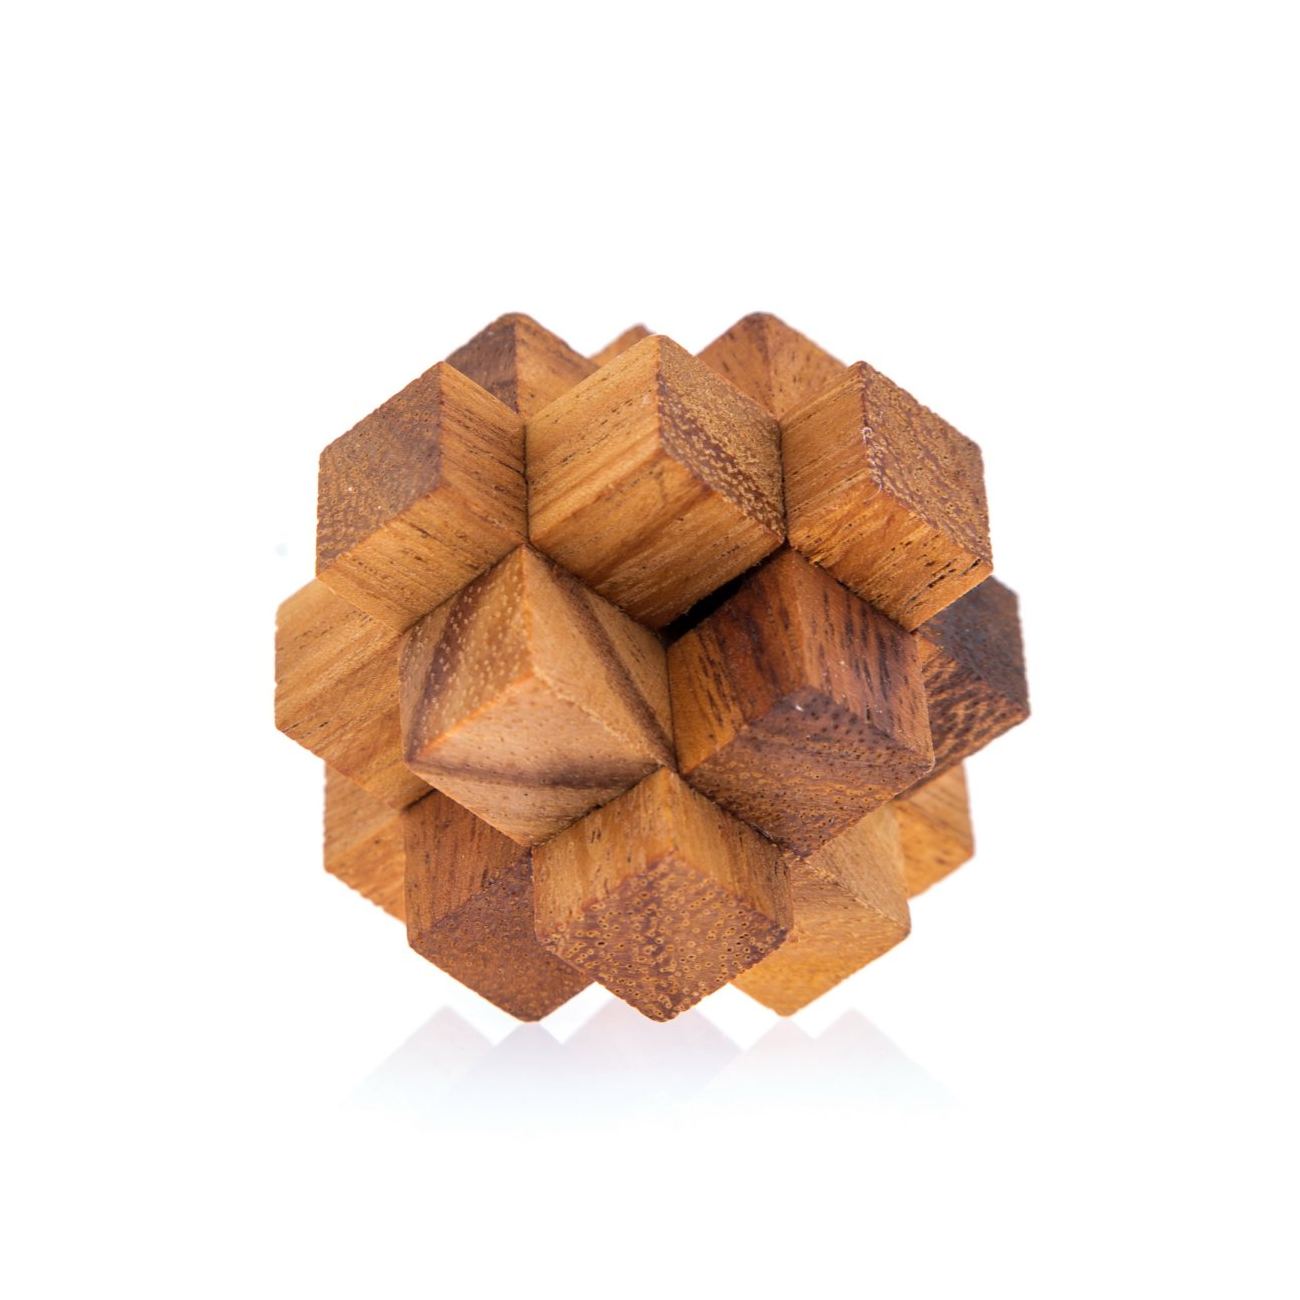 Handmade Wooden 3D Brain Teaser Puzzle 